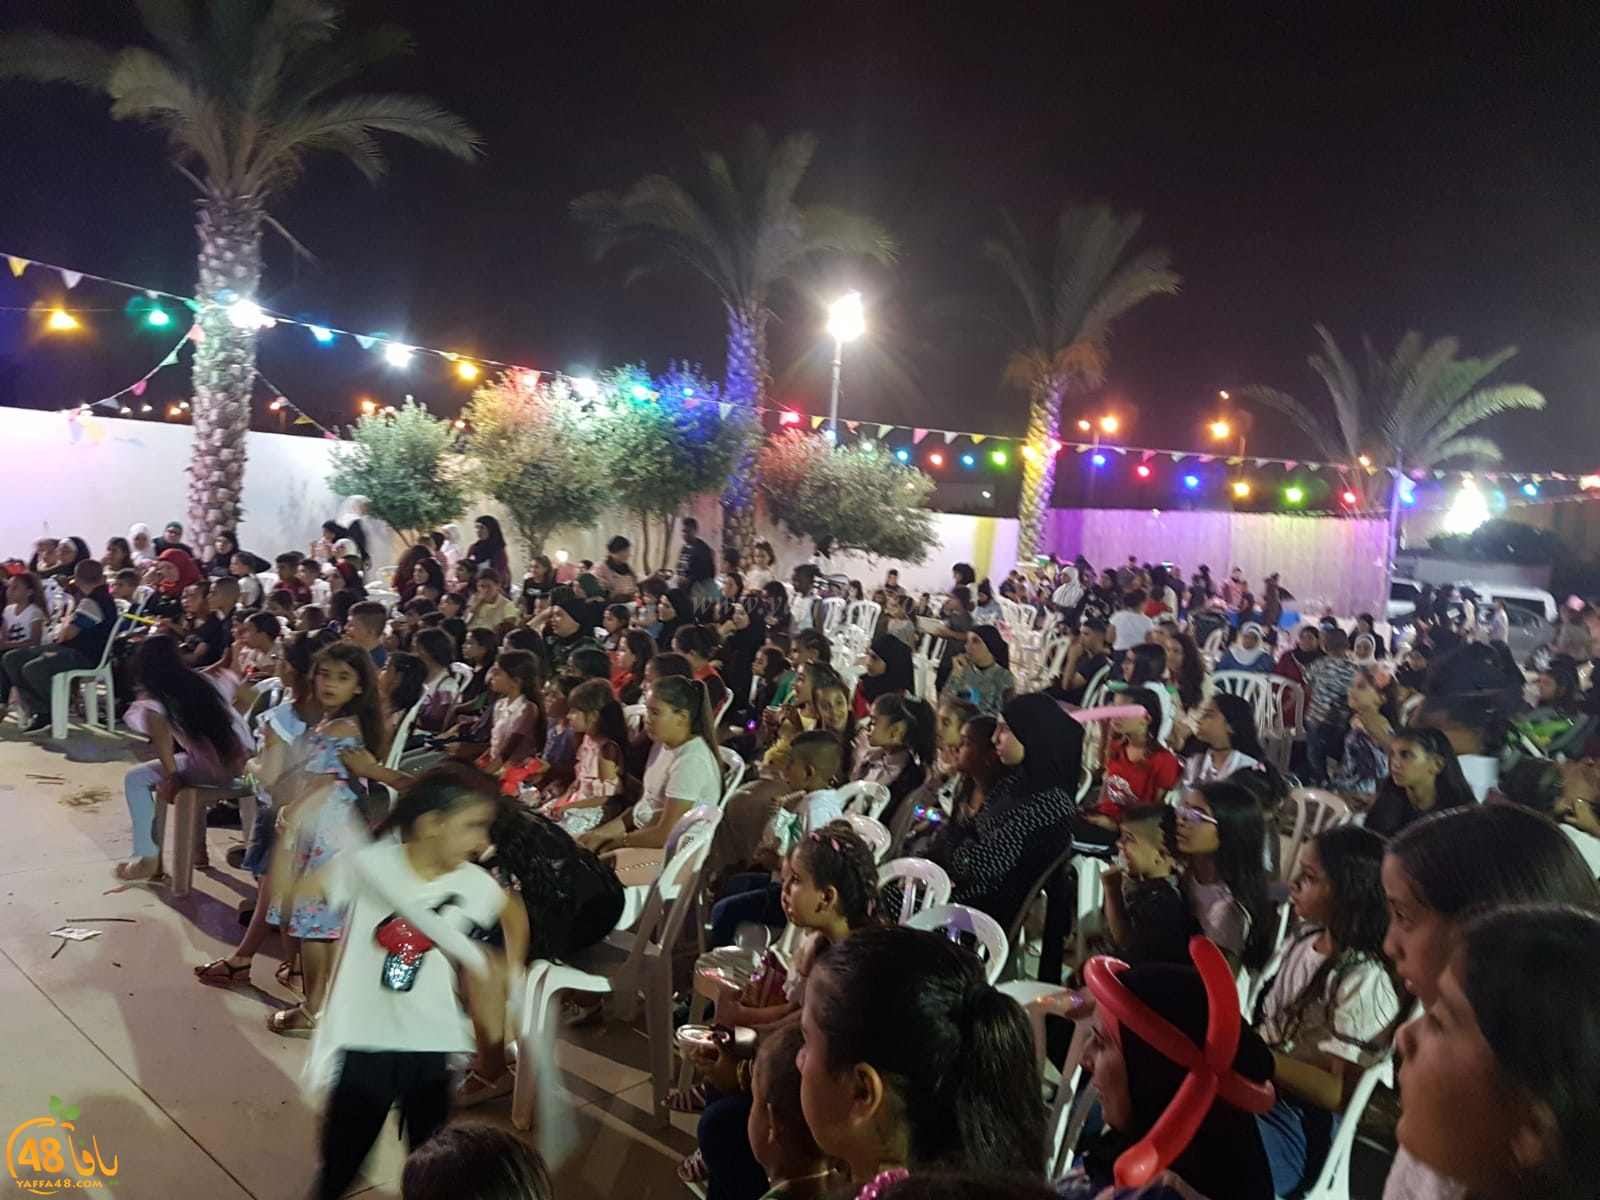 المئات في احتفال عيد الفطر  بحي الرباط والبلد القديمة في الرملة 